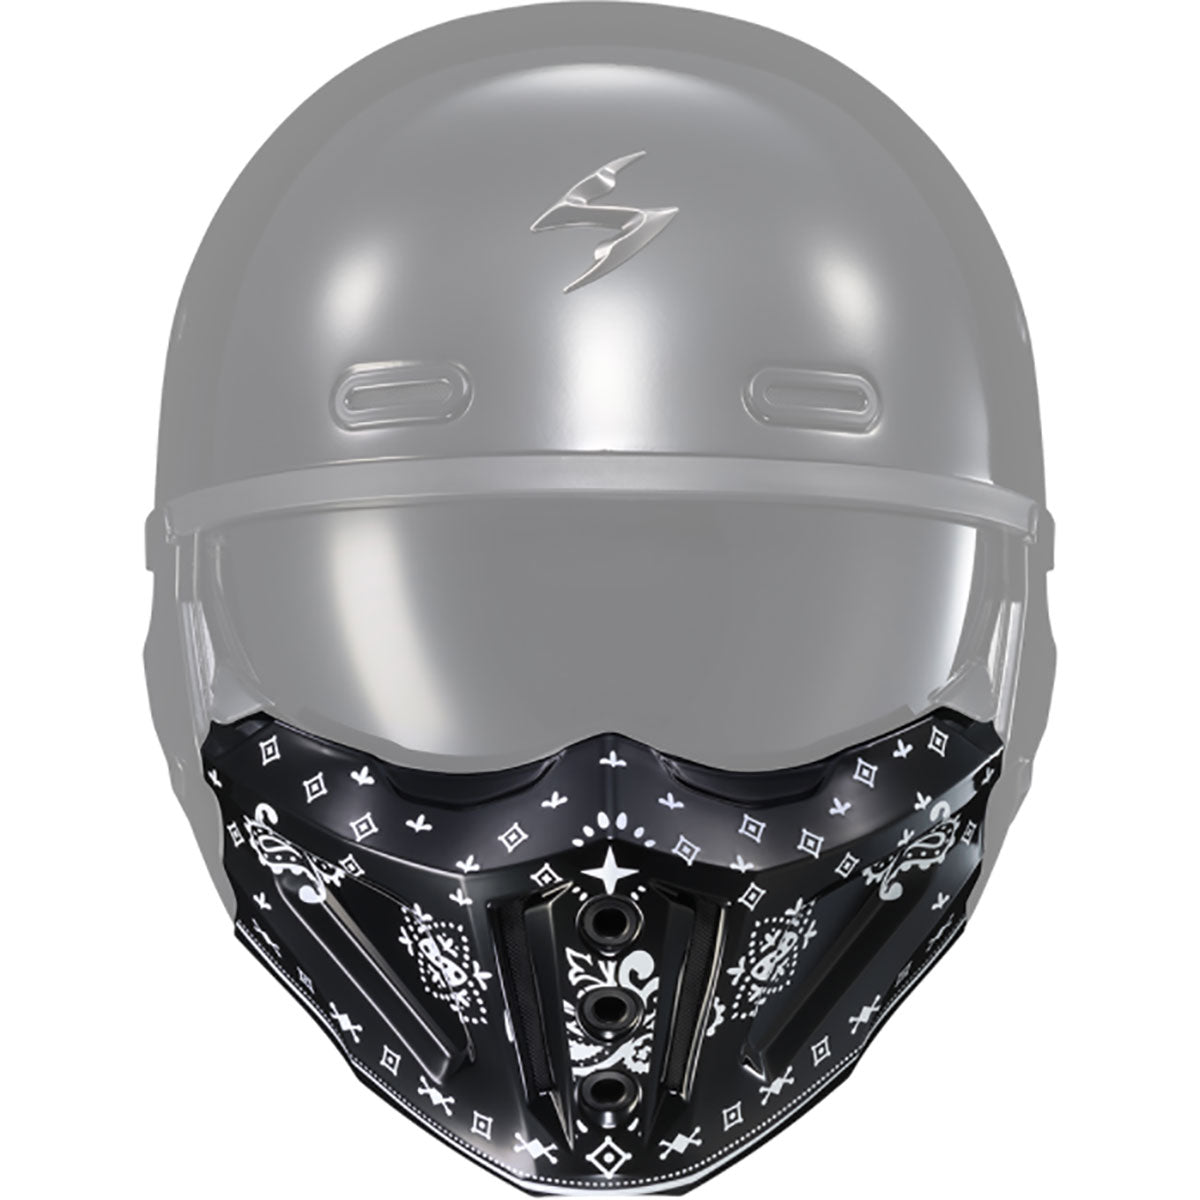 Excision All-Over 'Sliced' Logo Face Mask - Black/Grey